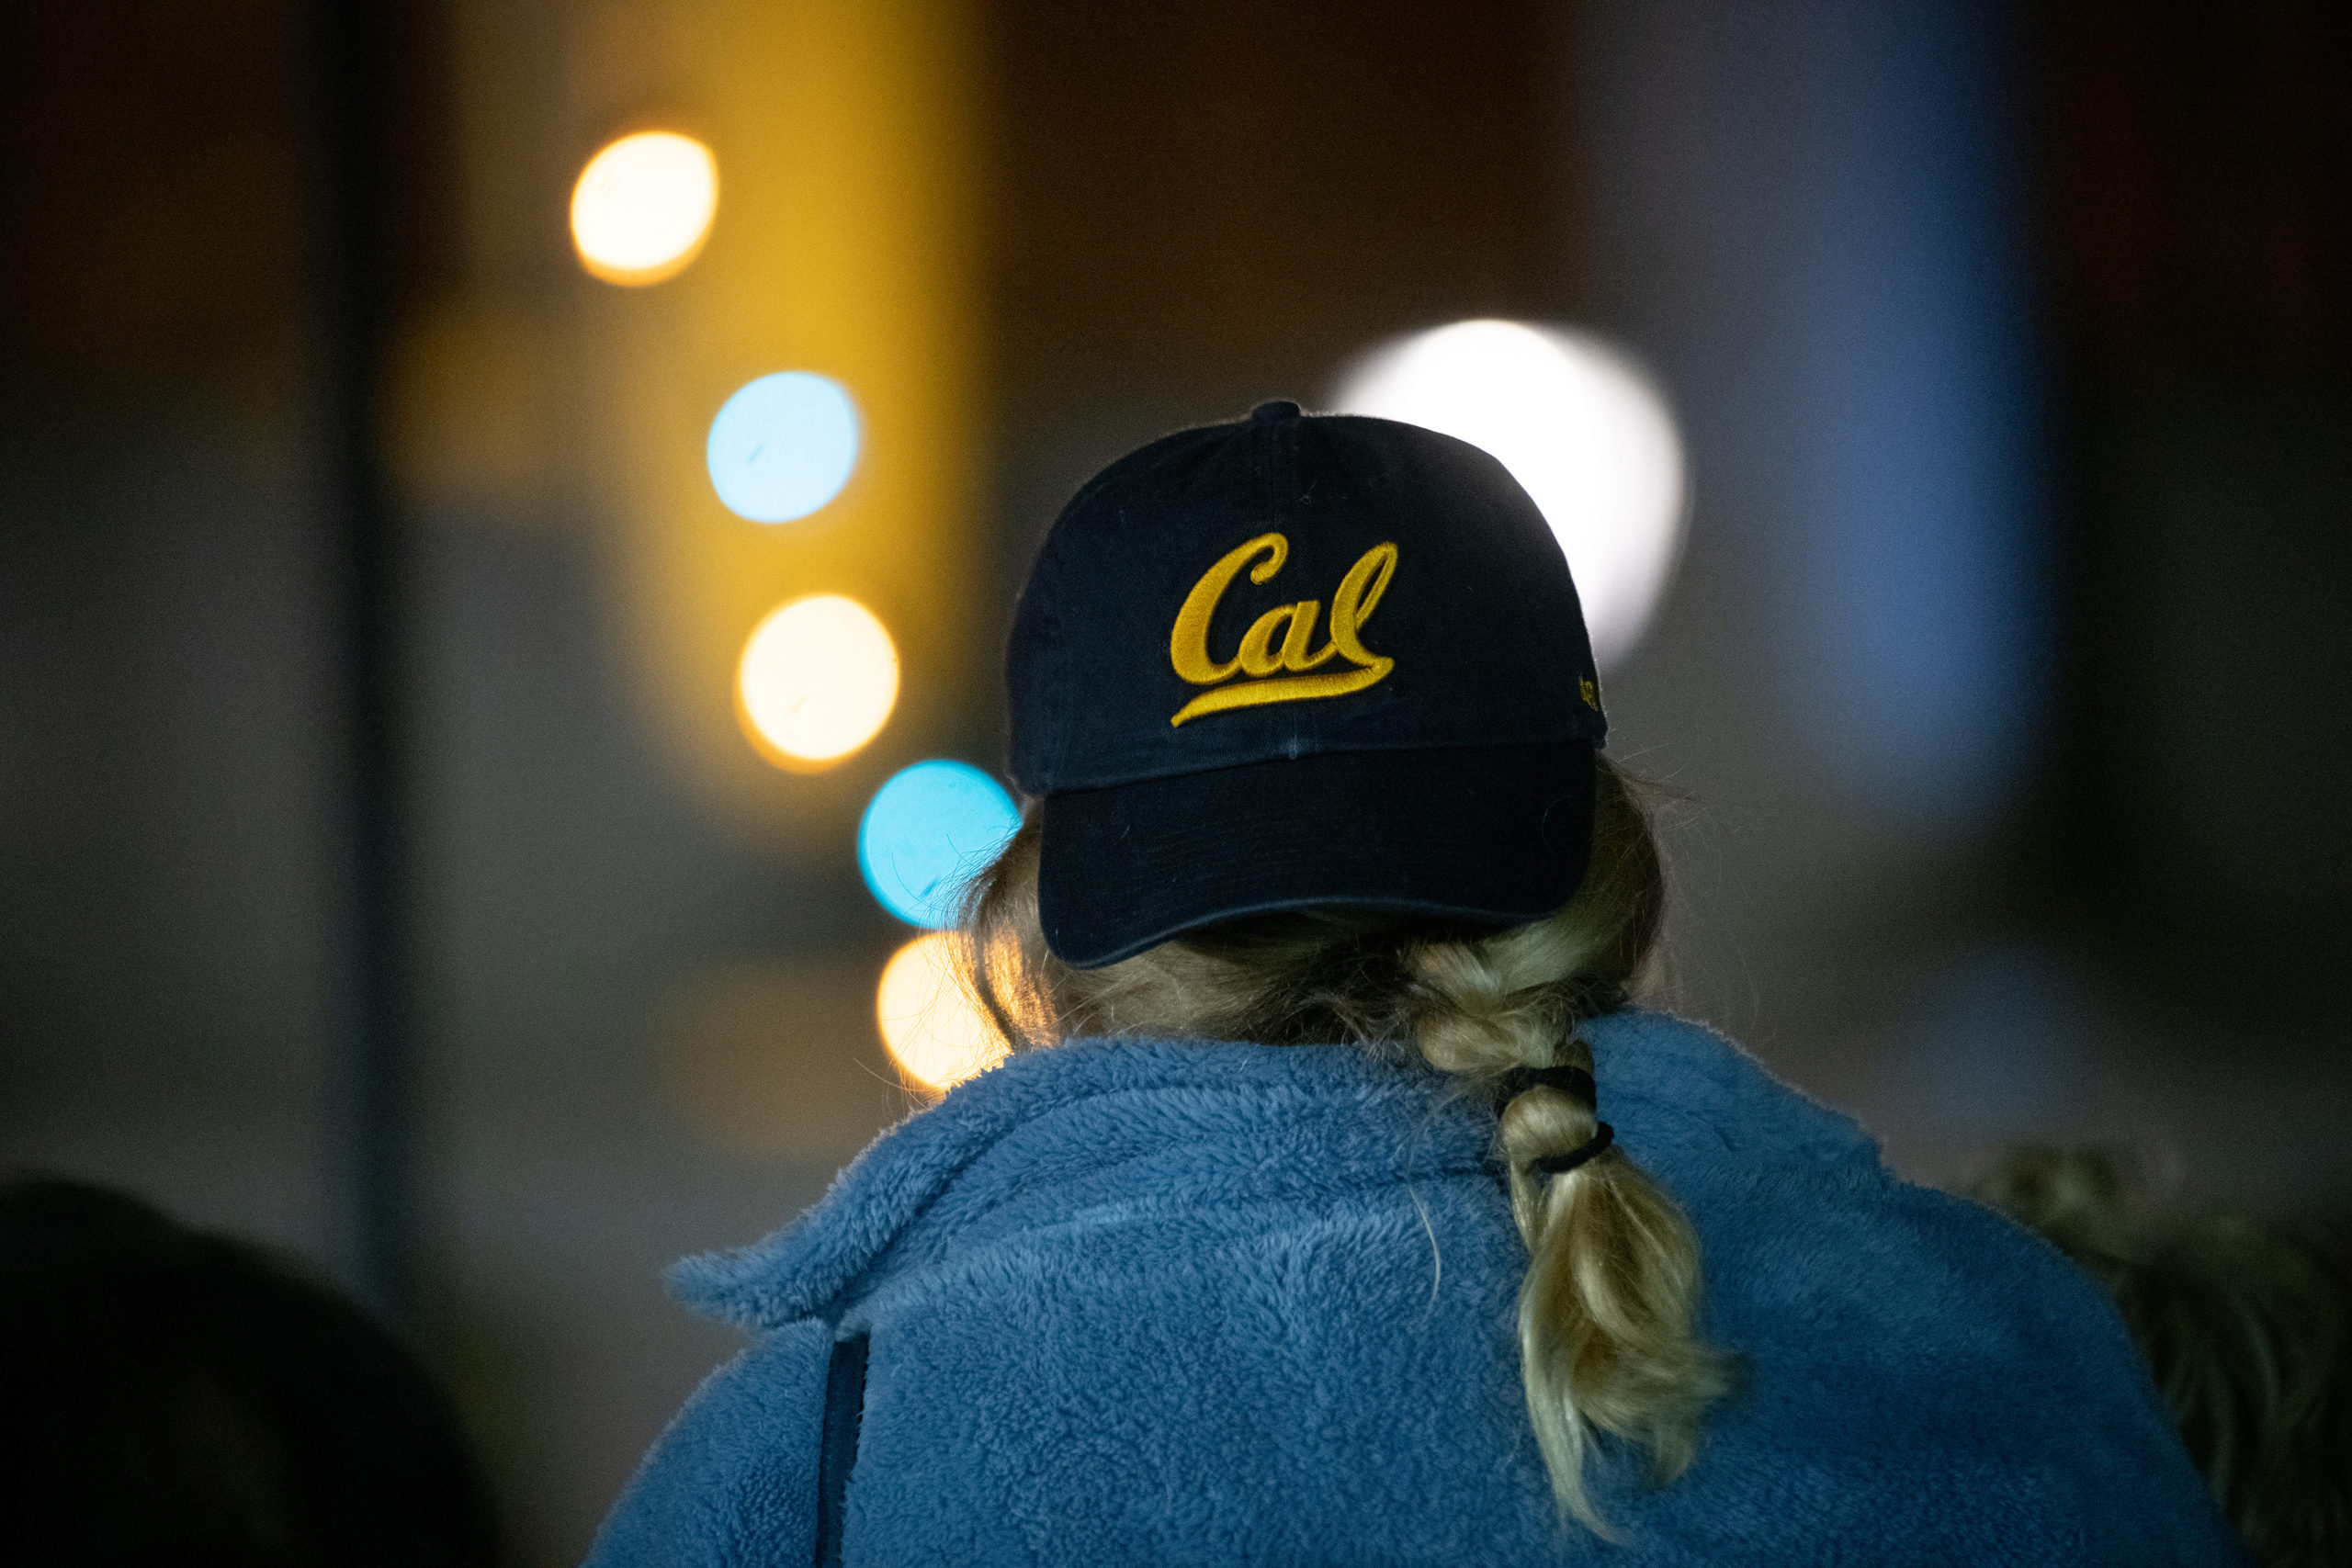 Woman wearing a Cal baseball cap